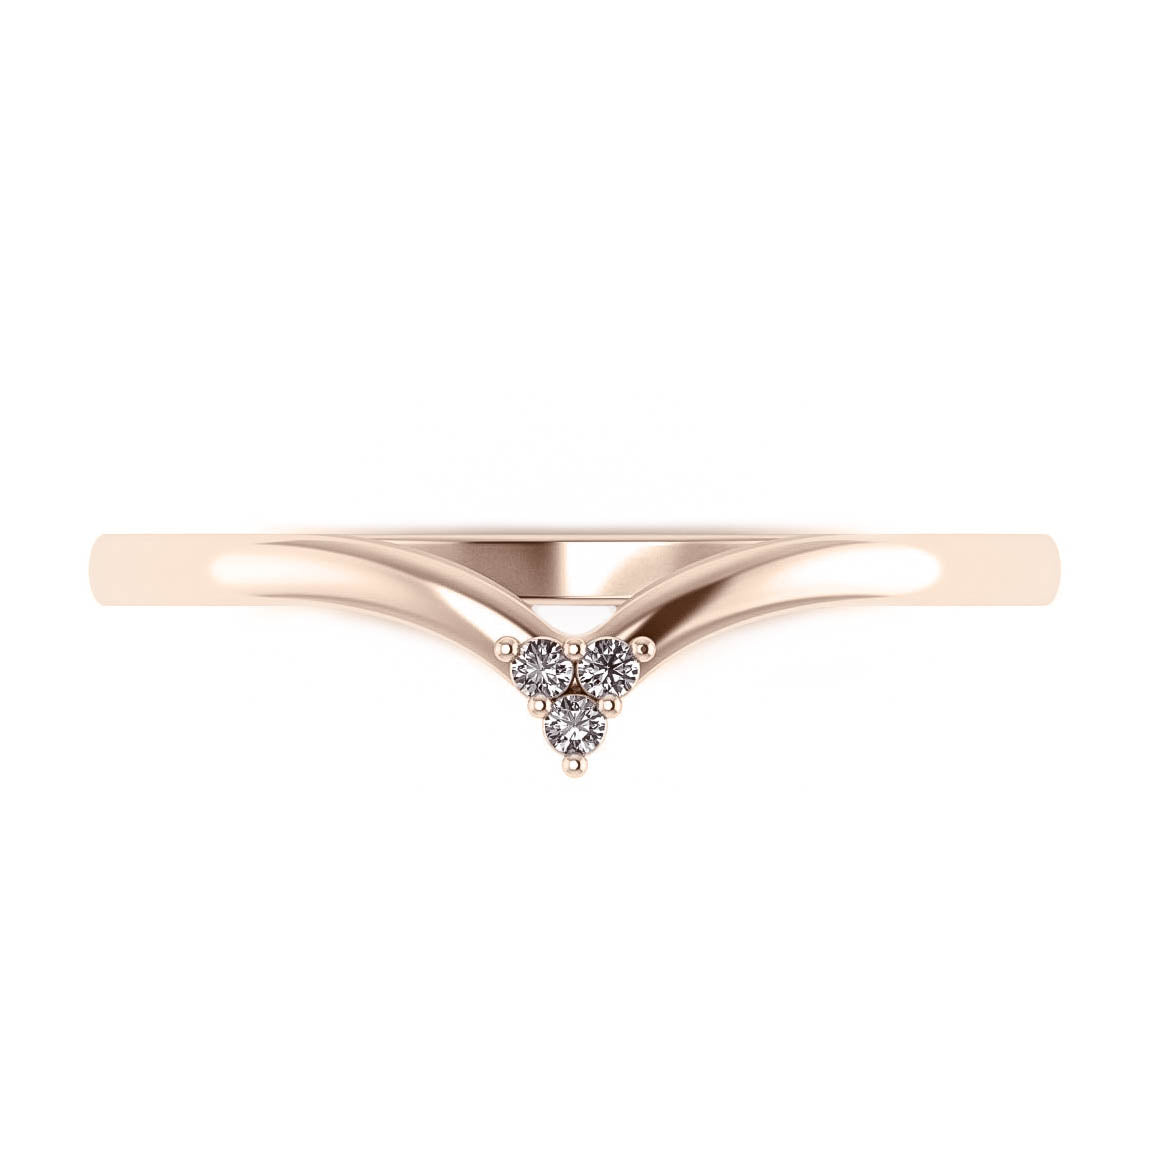 Ariadne | bridal ring set, 6.5 mm central gemstone - Eden Garden Jewelry™